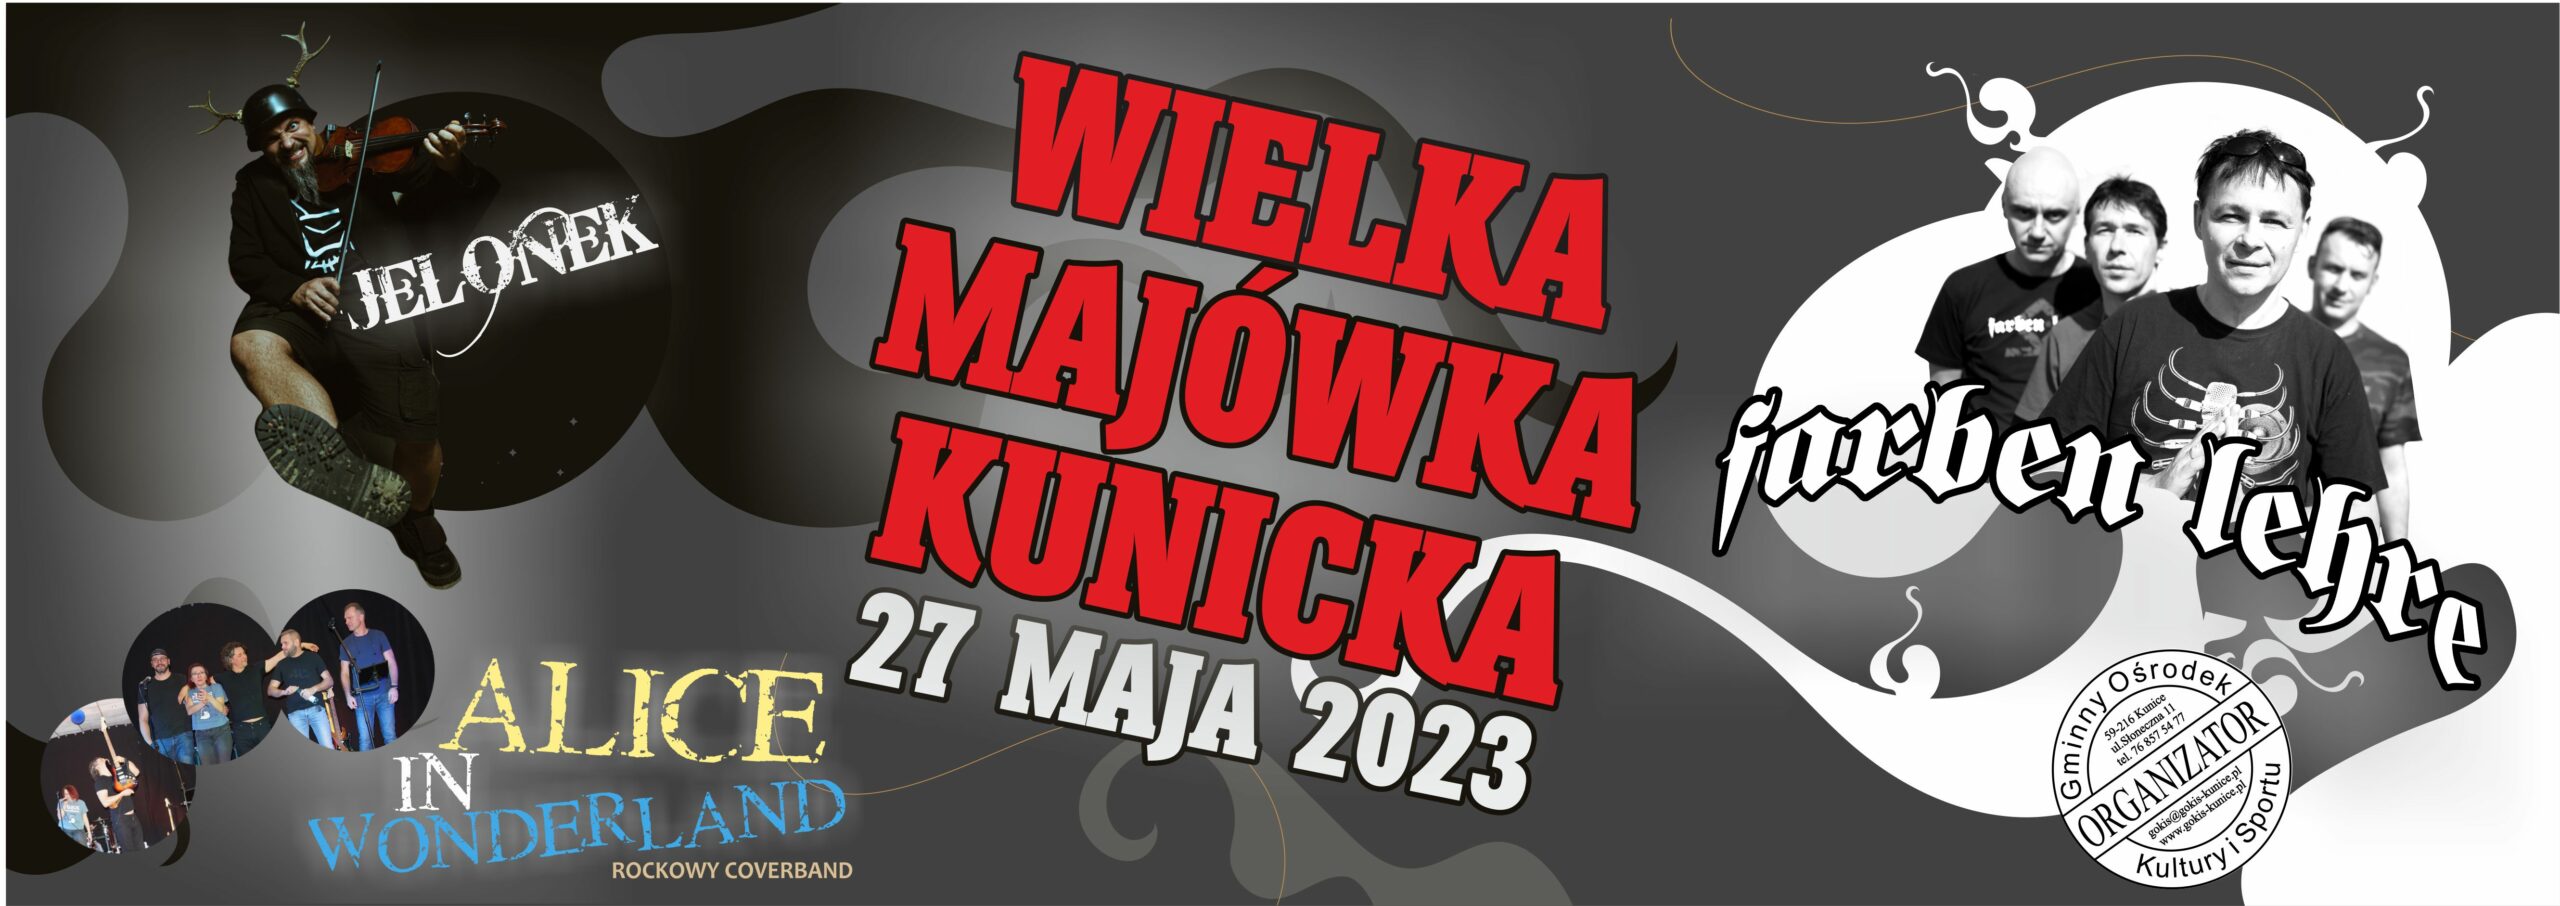 http://www.gokis-kunice.pl/imprezy/majowka-kunicka/